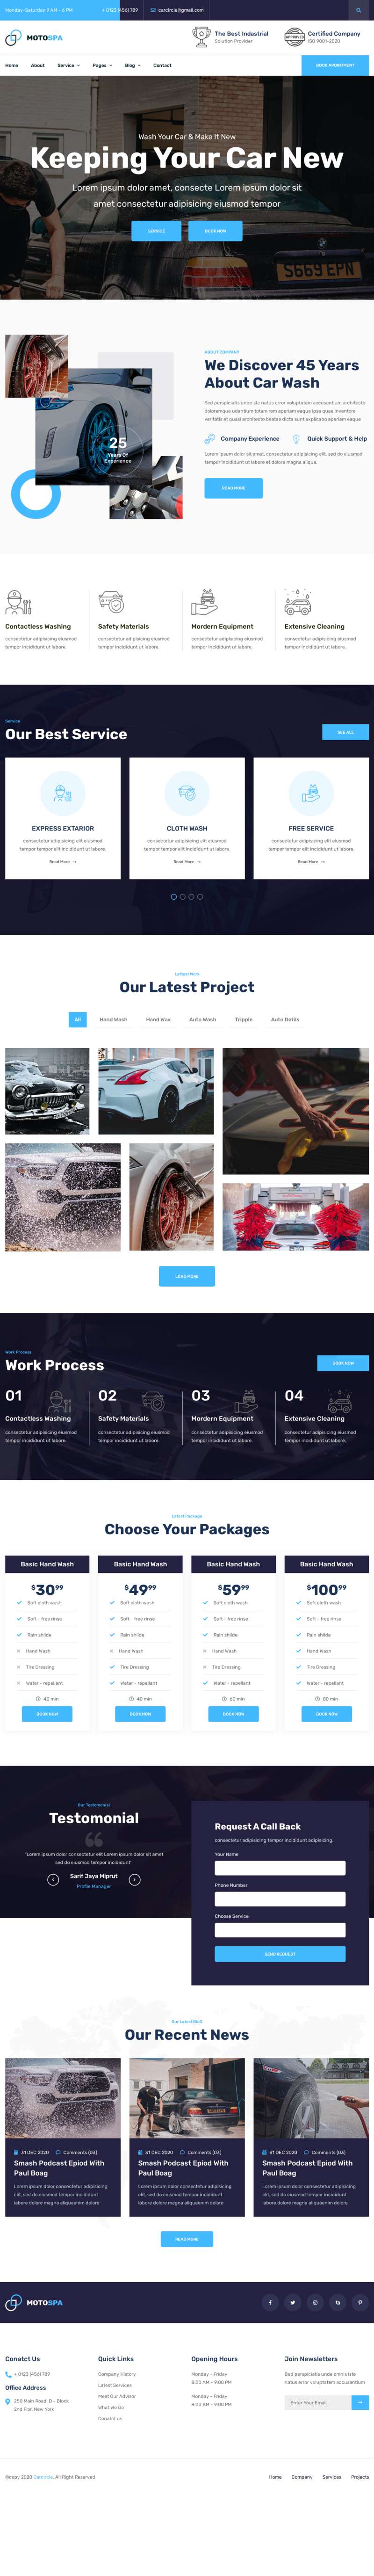 洗车加盟店铺网站HTML模板